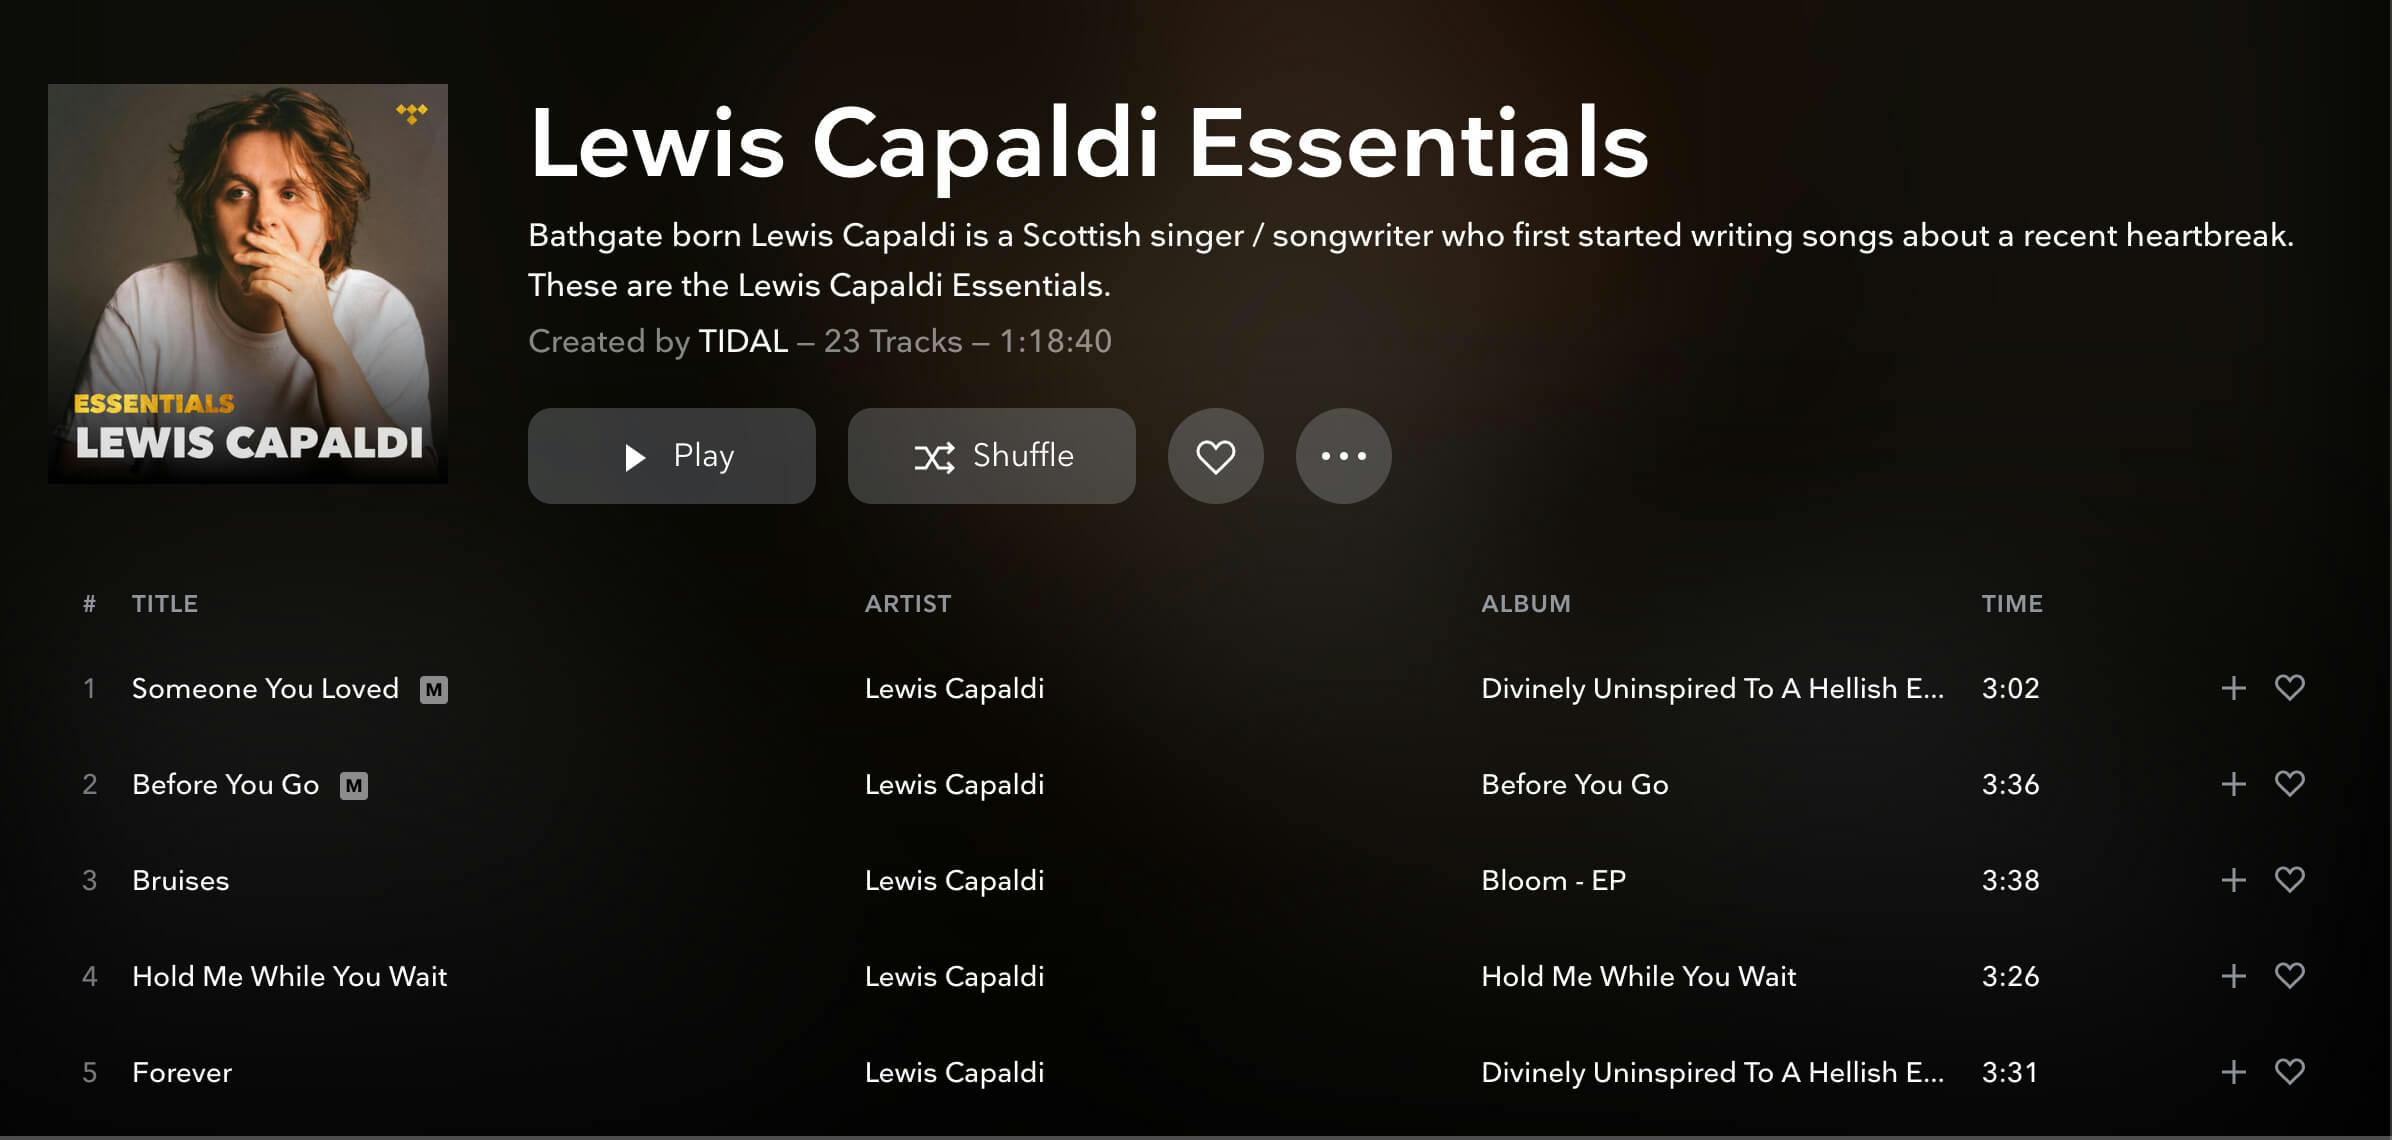 Lewis Capaldi - Tidal essentials